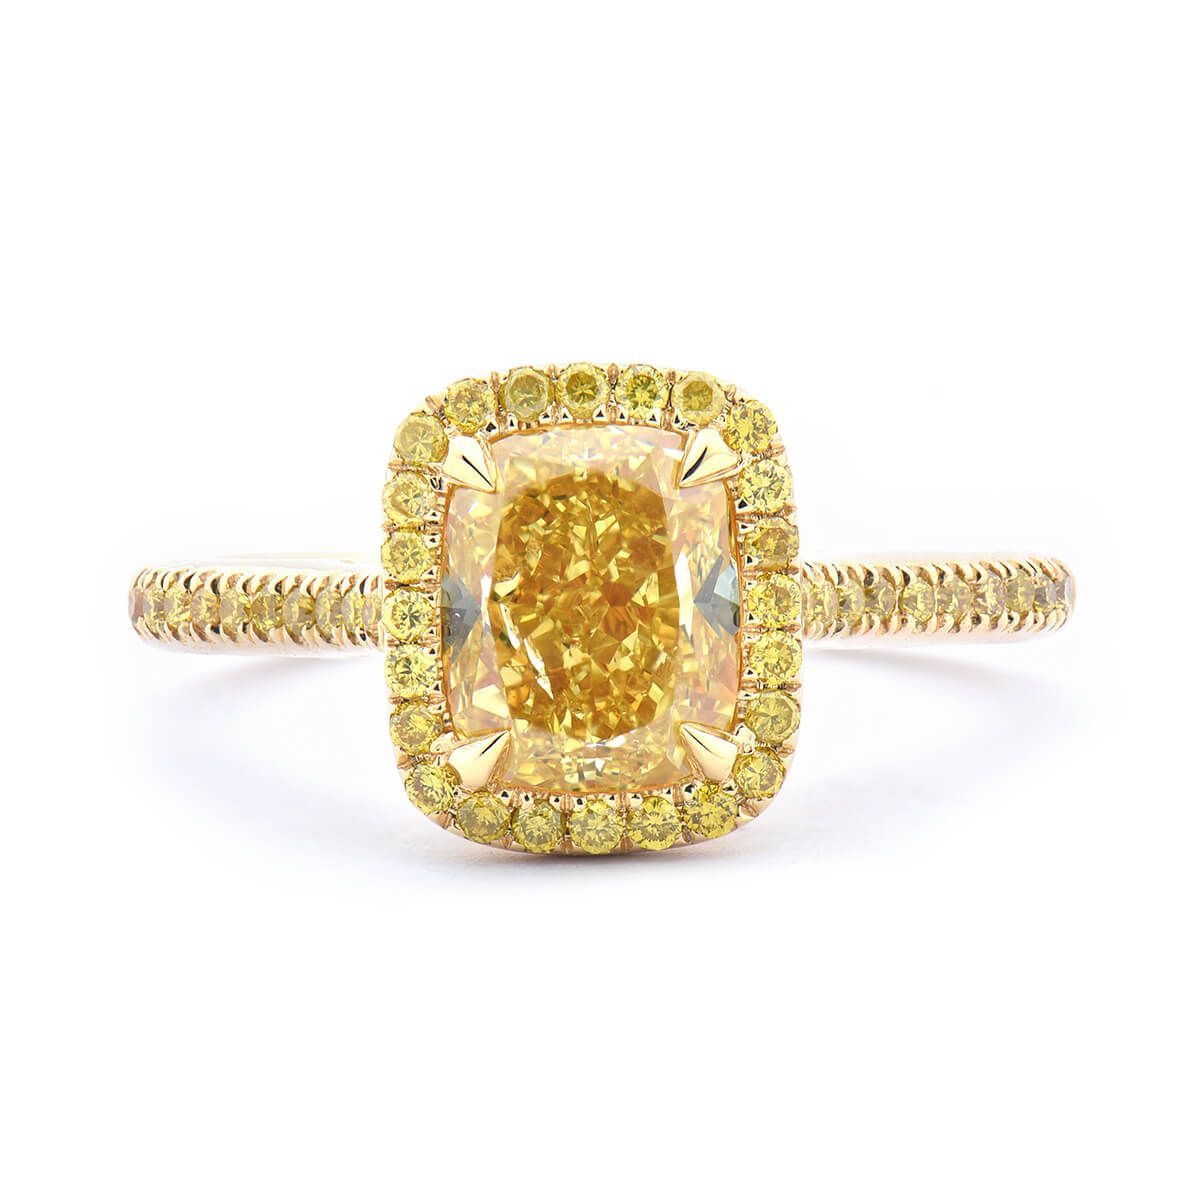 Fancy Intense Yellow Diamond Ring, 2.01 Ct. (2.29 Ct. TW), Cushion shape, GIA Certified, 2195149621